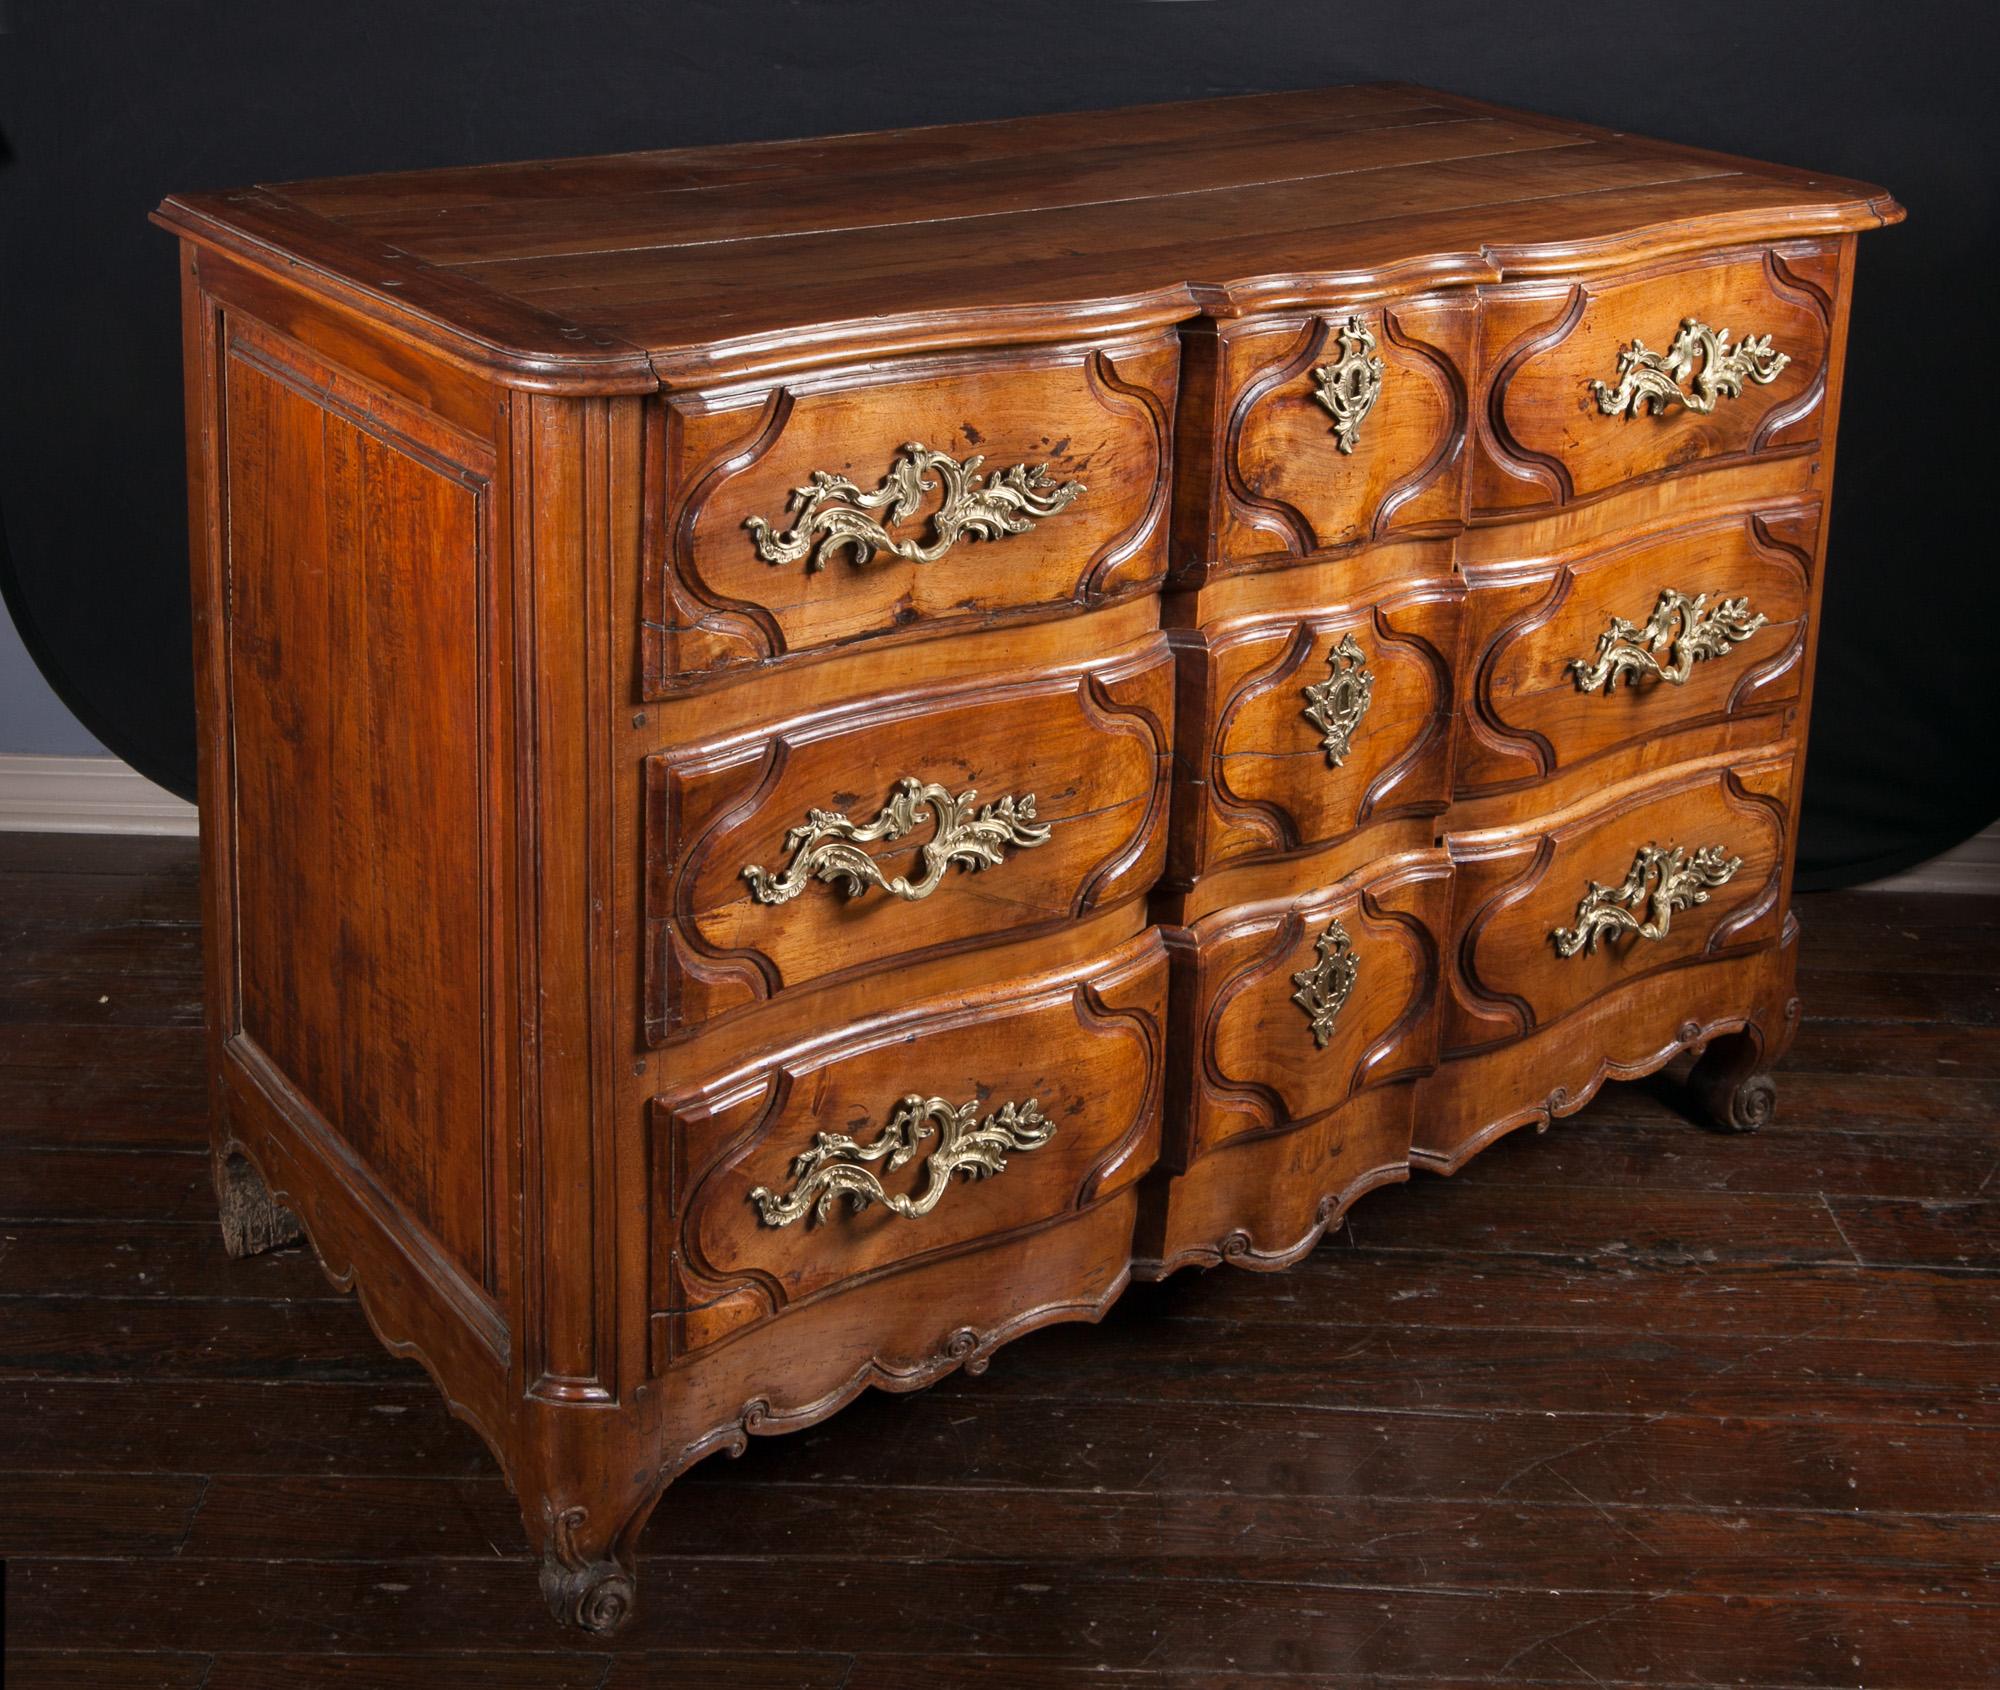 Diese Lyonnaise-Kommode aus dem 18. Jahrhundert ist einfach exquisit. Das Möbelstück ist aus Nussbaumholz im Regence-Stil gefertigt und verfügt über drei Schubladen, alle mit den originalen Griffen und Beschlägen aus Bronze. Die Platte aus